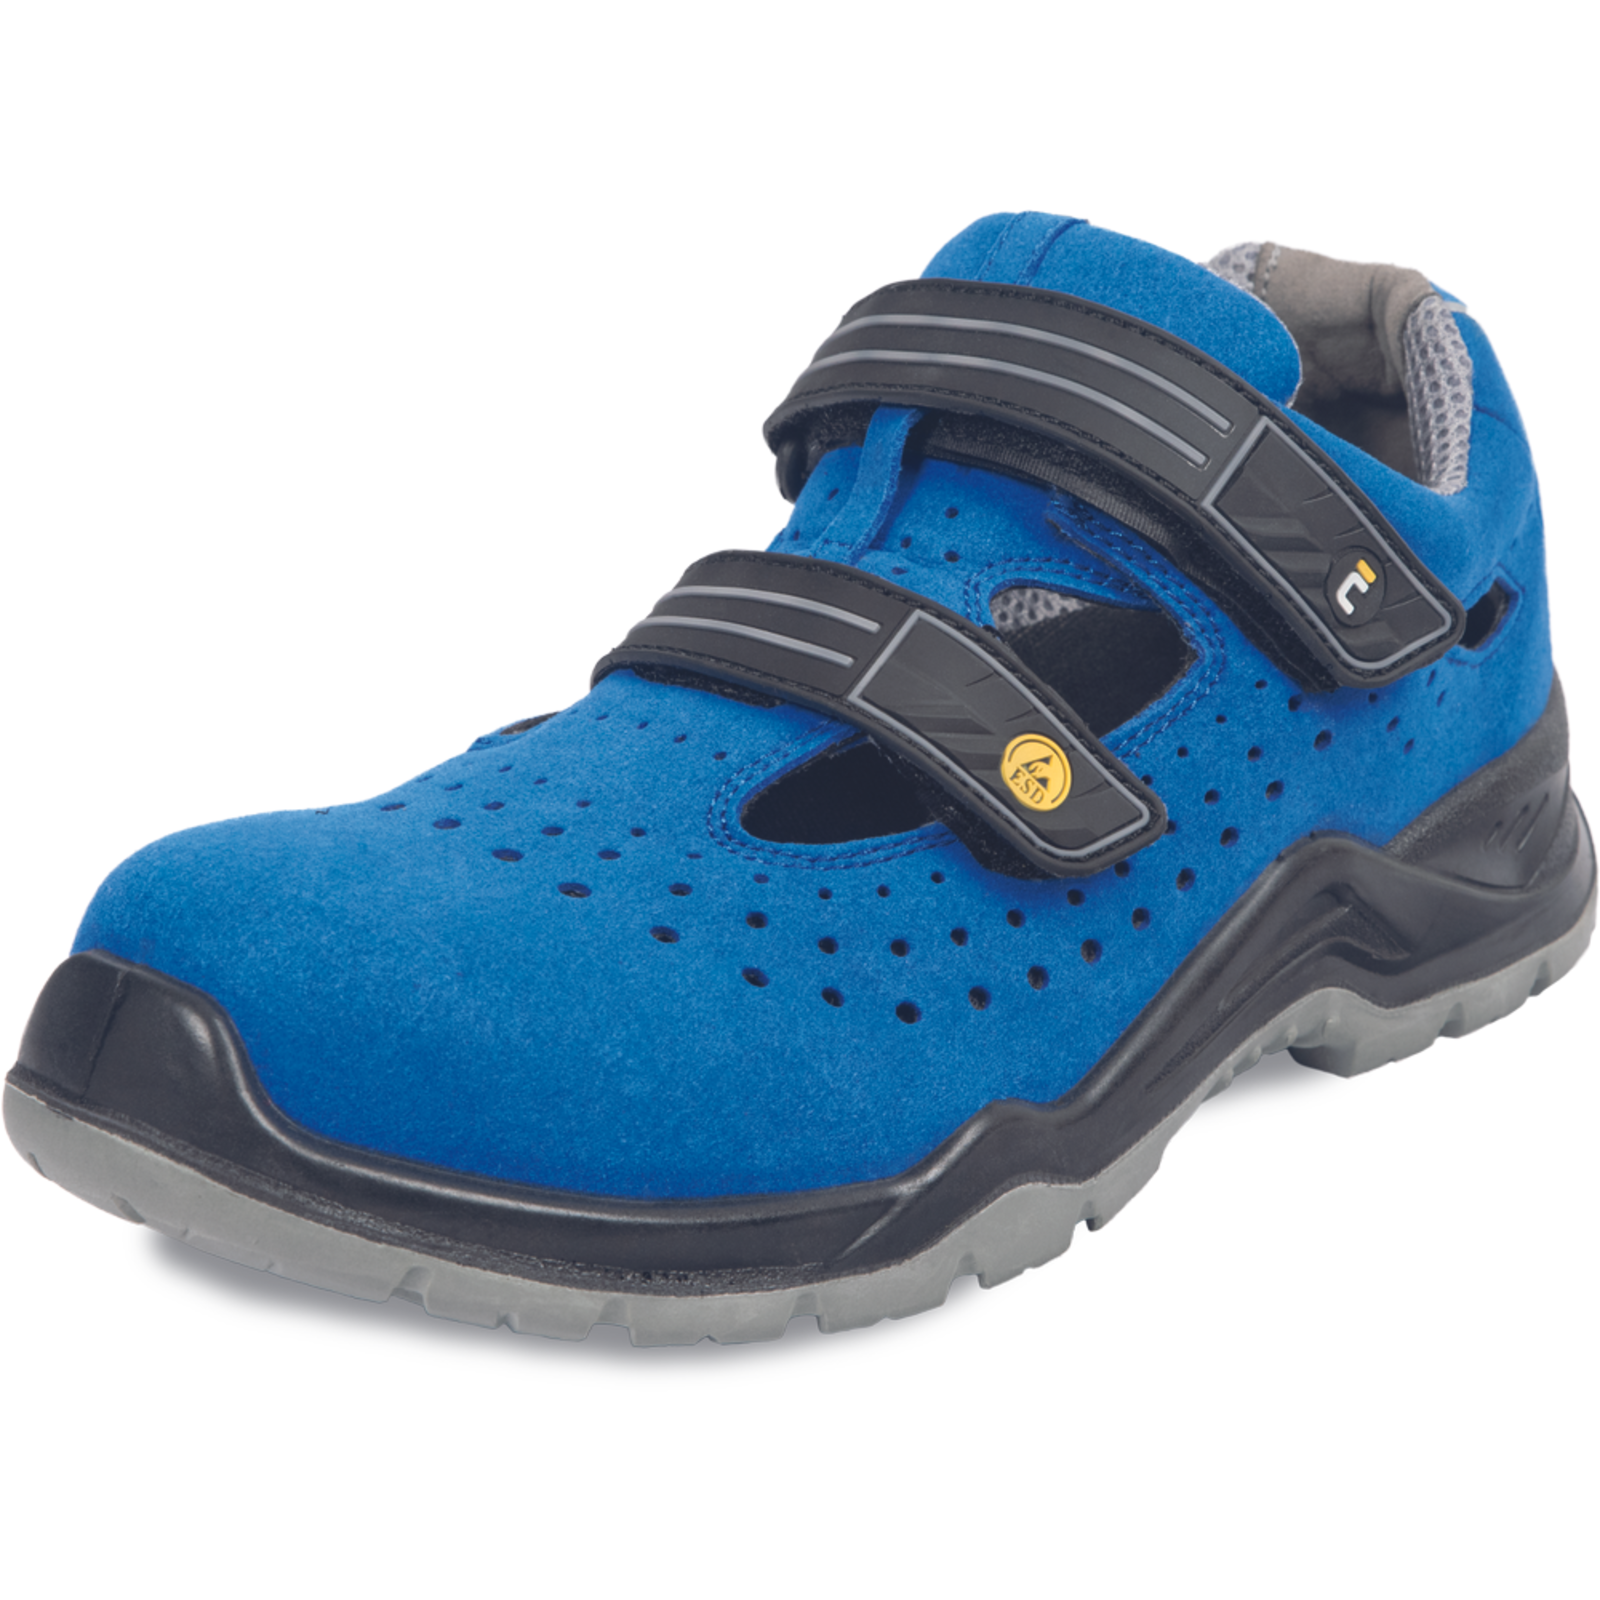 Bezpečnostné pracovné sandále Cerva Hagewill S1P - veľkosť: 42, farba: modrá